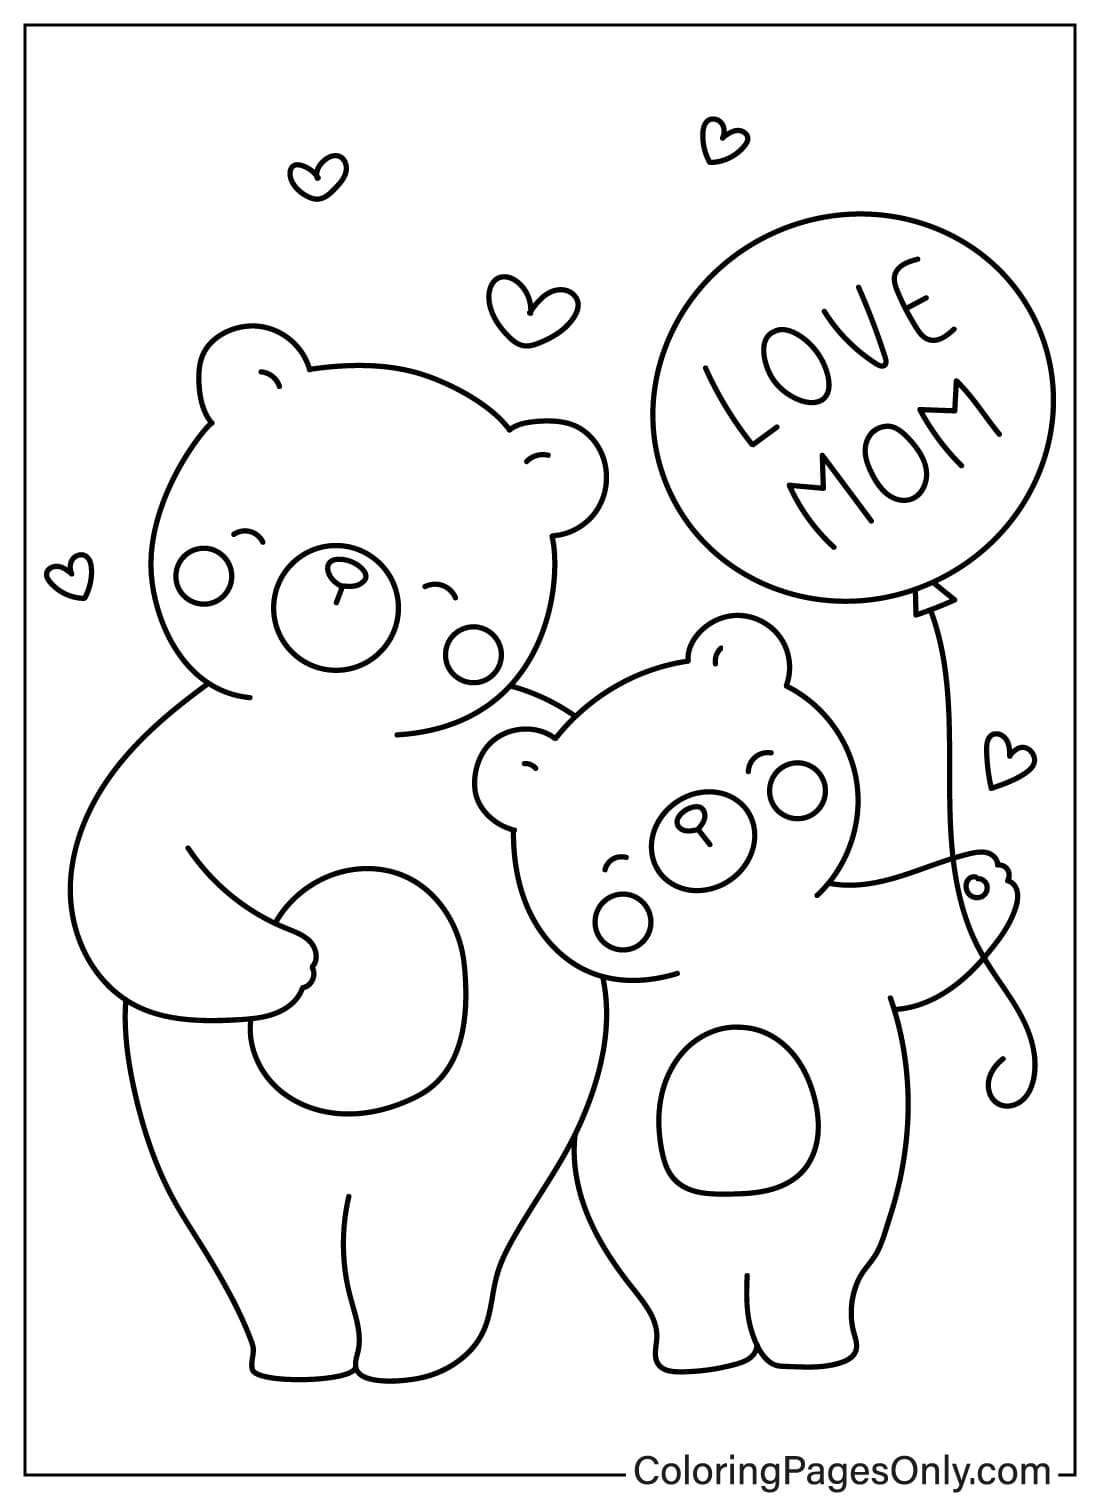 Медведь-мать и сын с воздушным шариком ко Дню матери